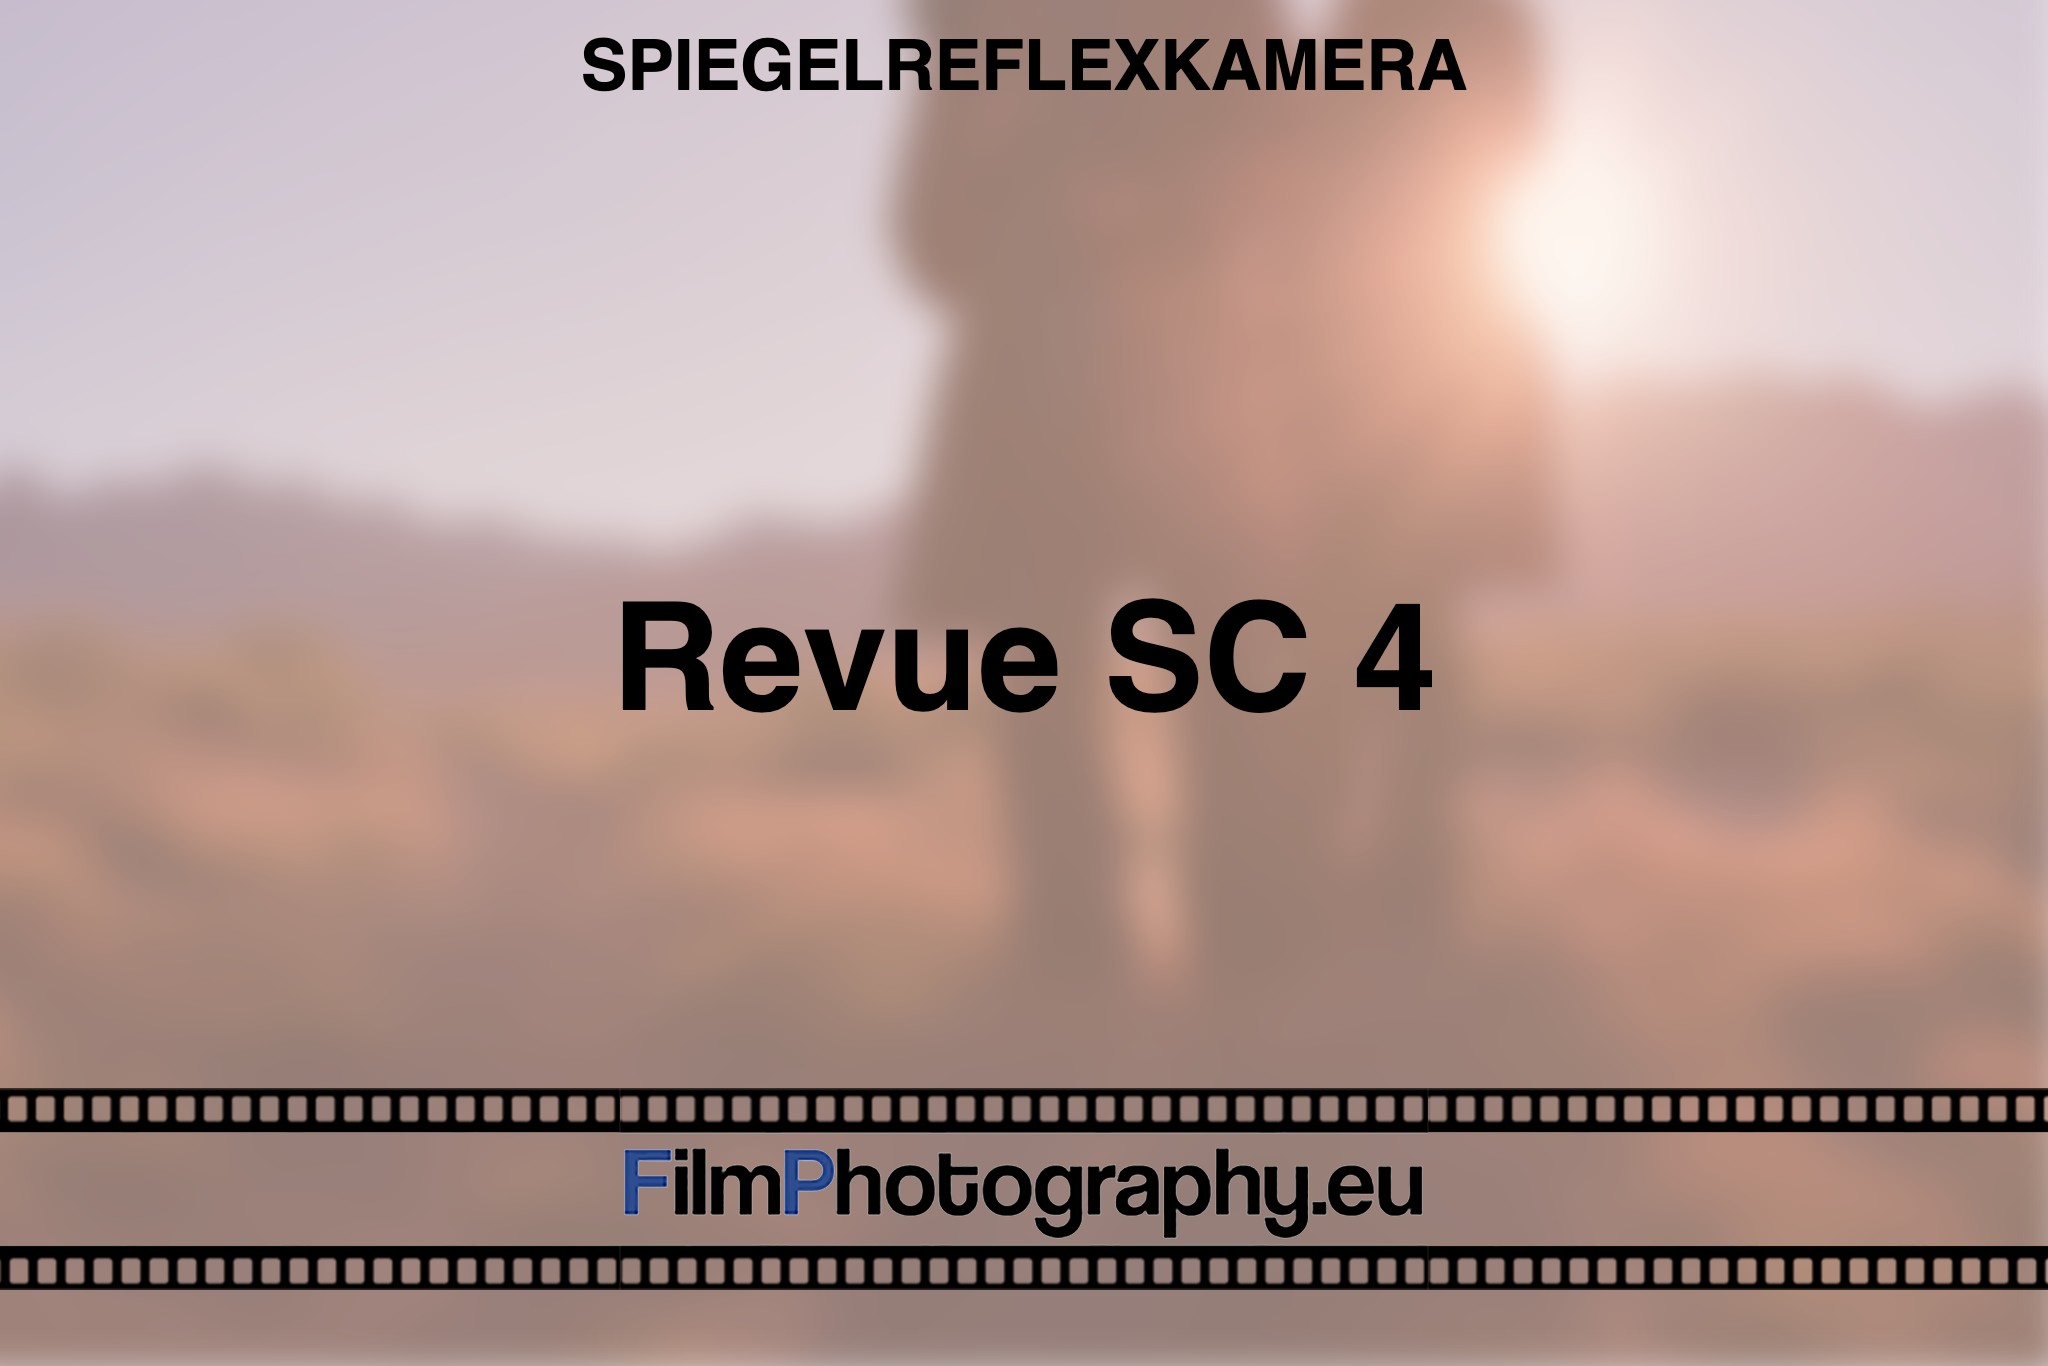 revue-sc-4-spiegelreflexkamera-bnv